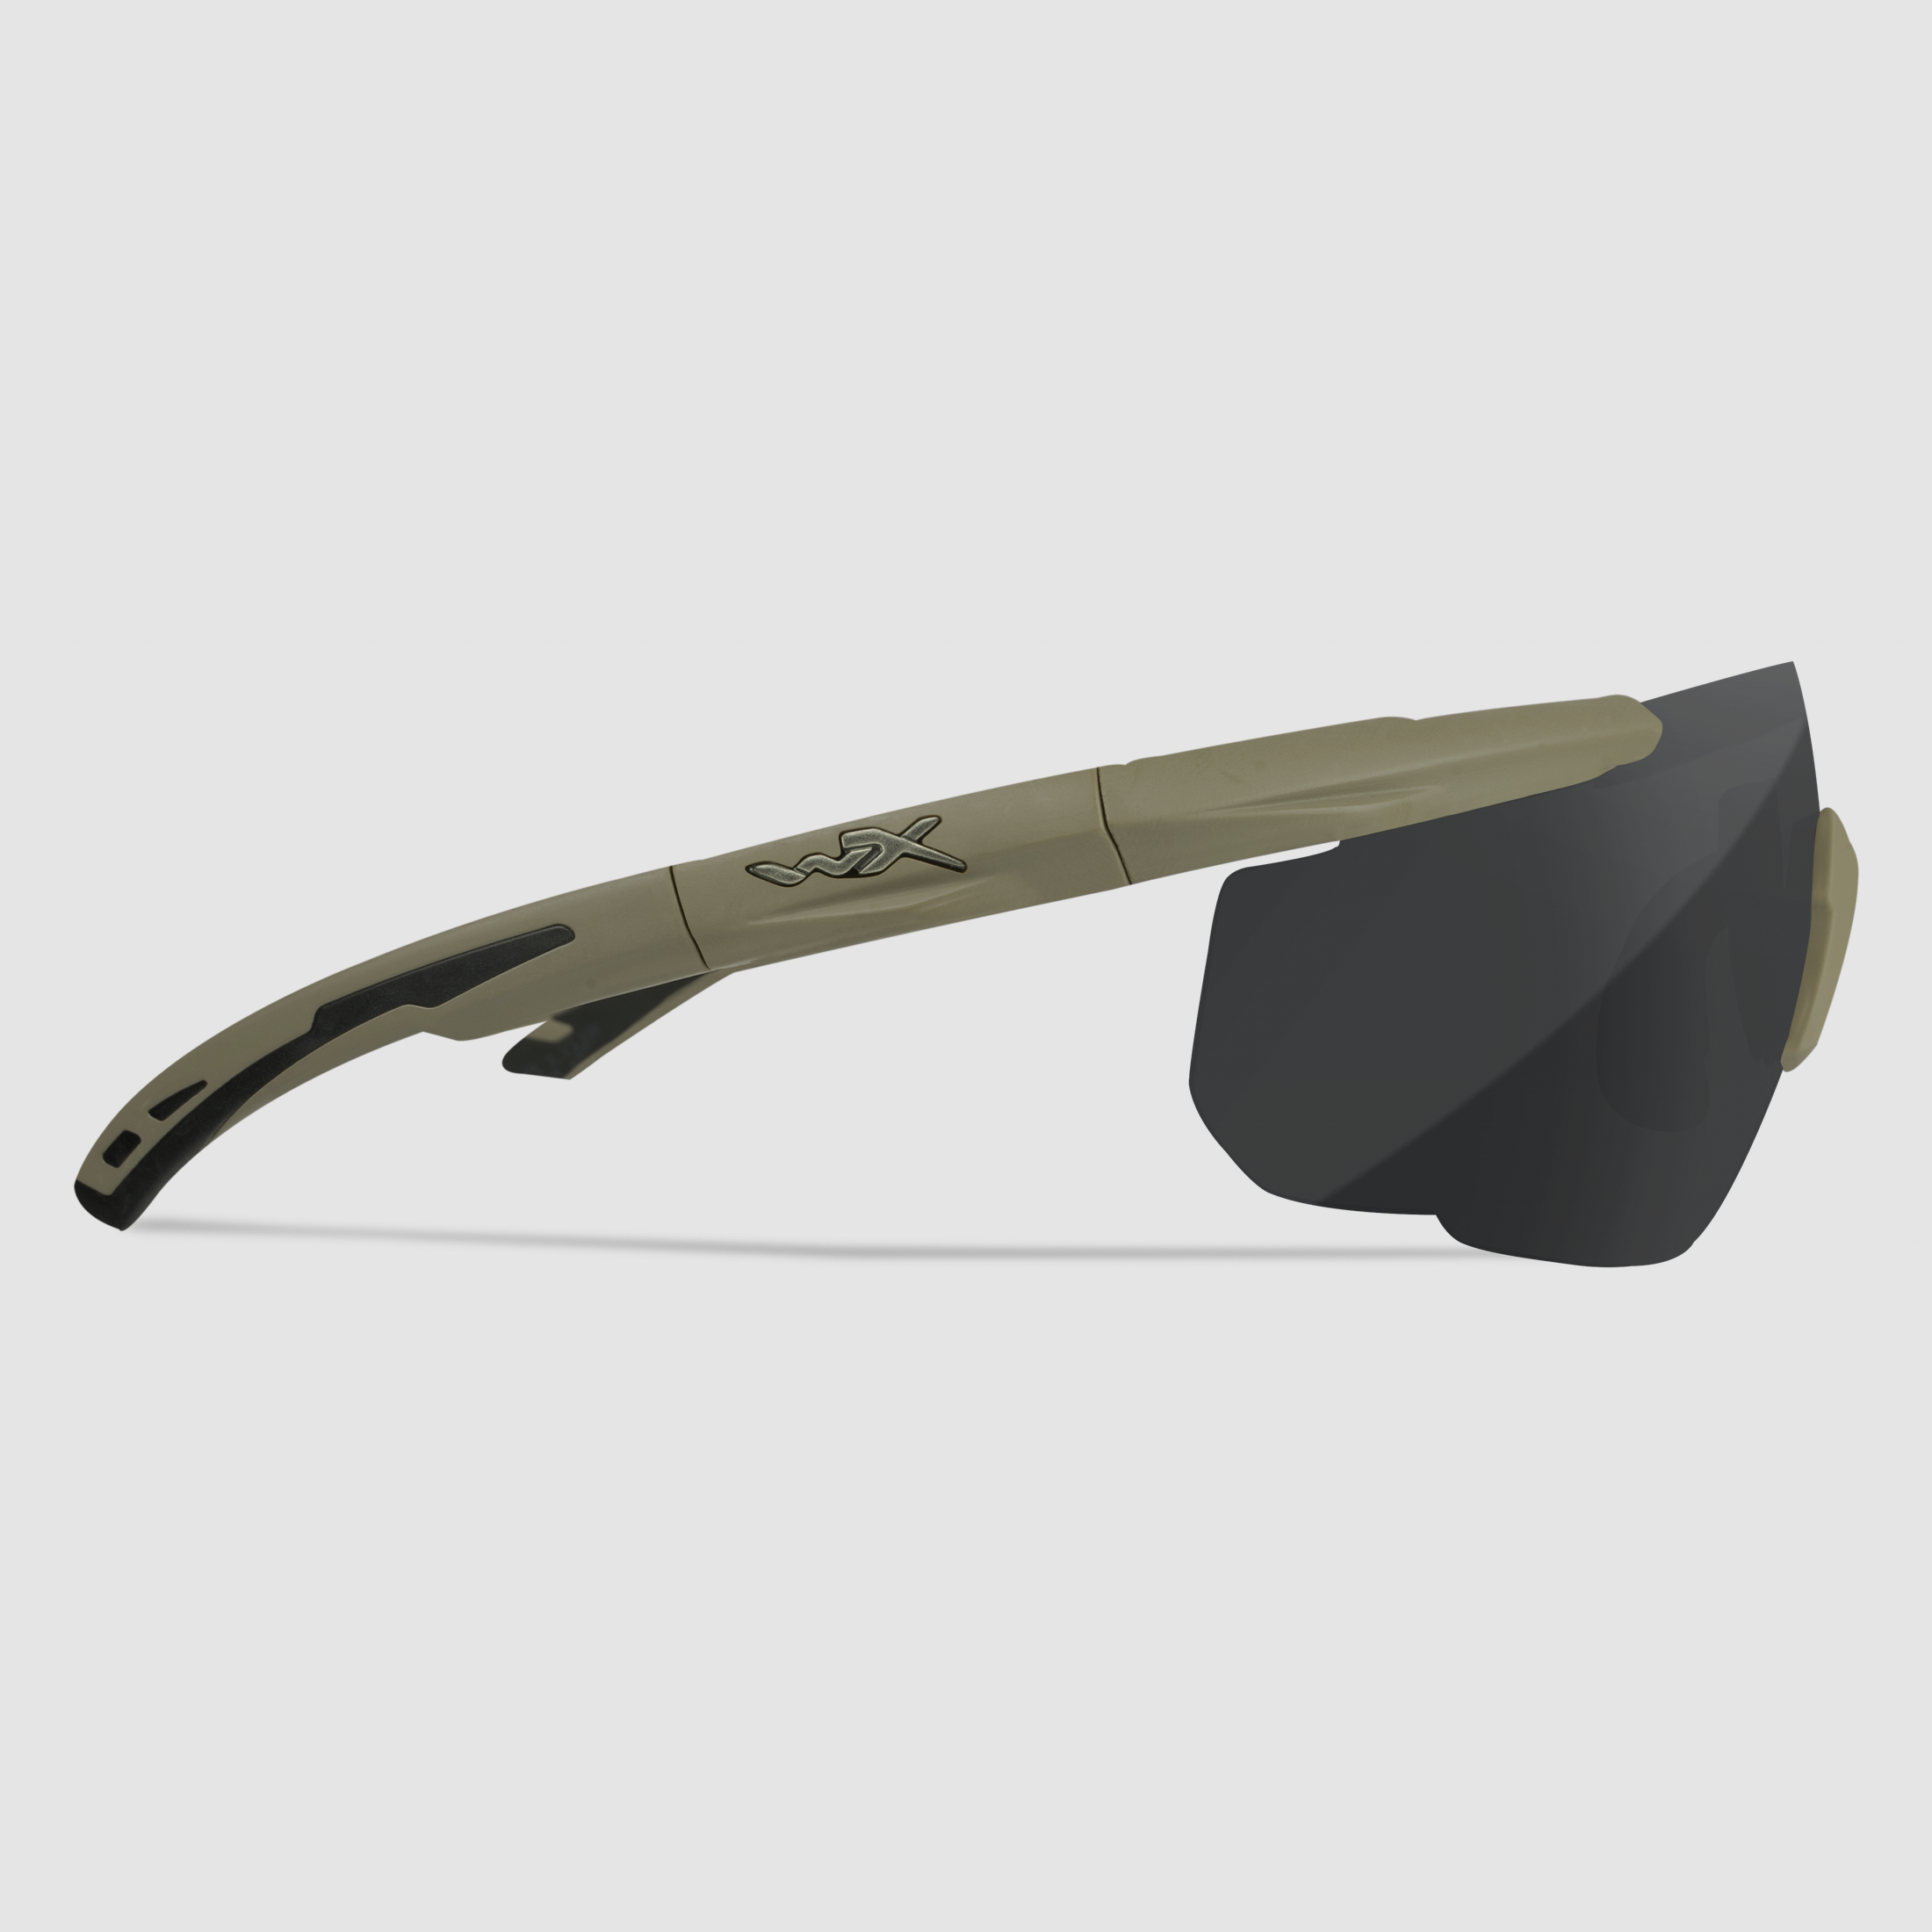 WX SABER Advanced Brille mit 3 Wechselgläsern, Gestellfarbe Matt Tarnfarbe